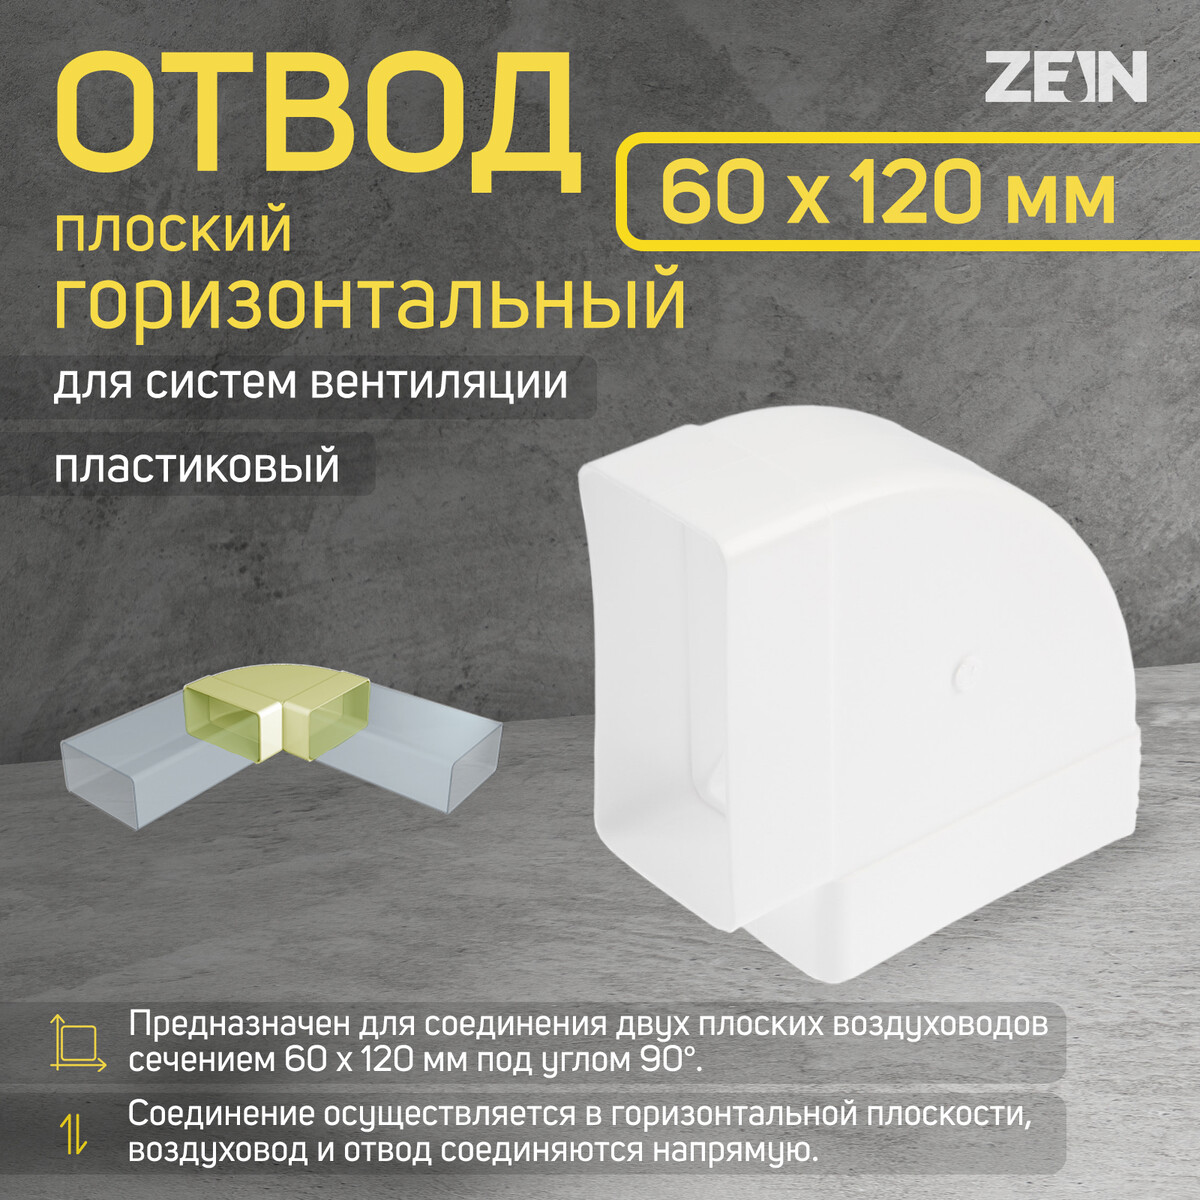 Отвод zein, плоский, горизонтальный, вентиляционный, 60 х 120 мм